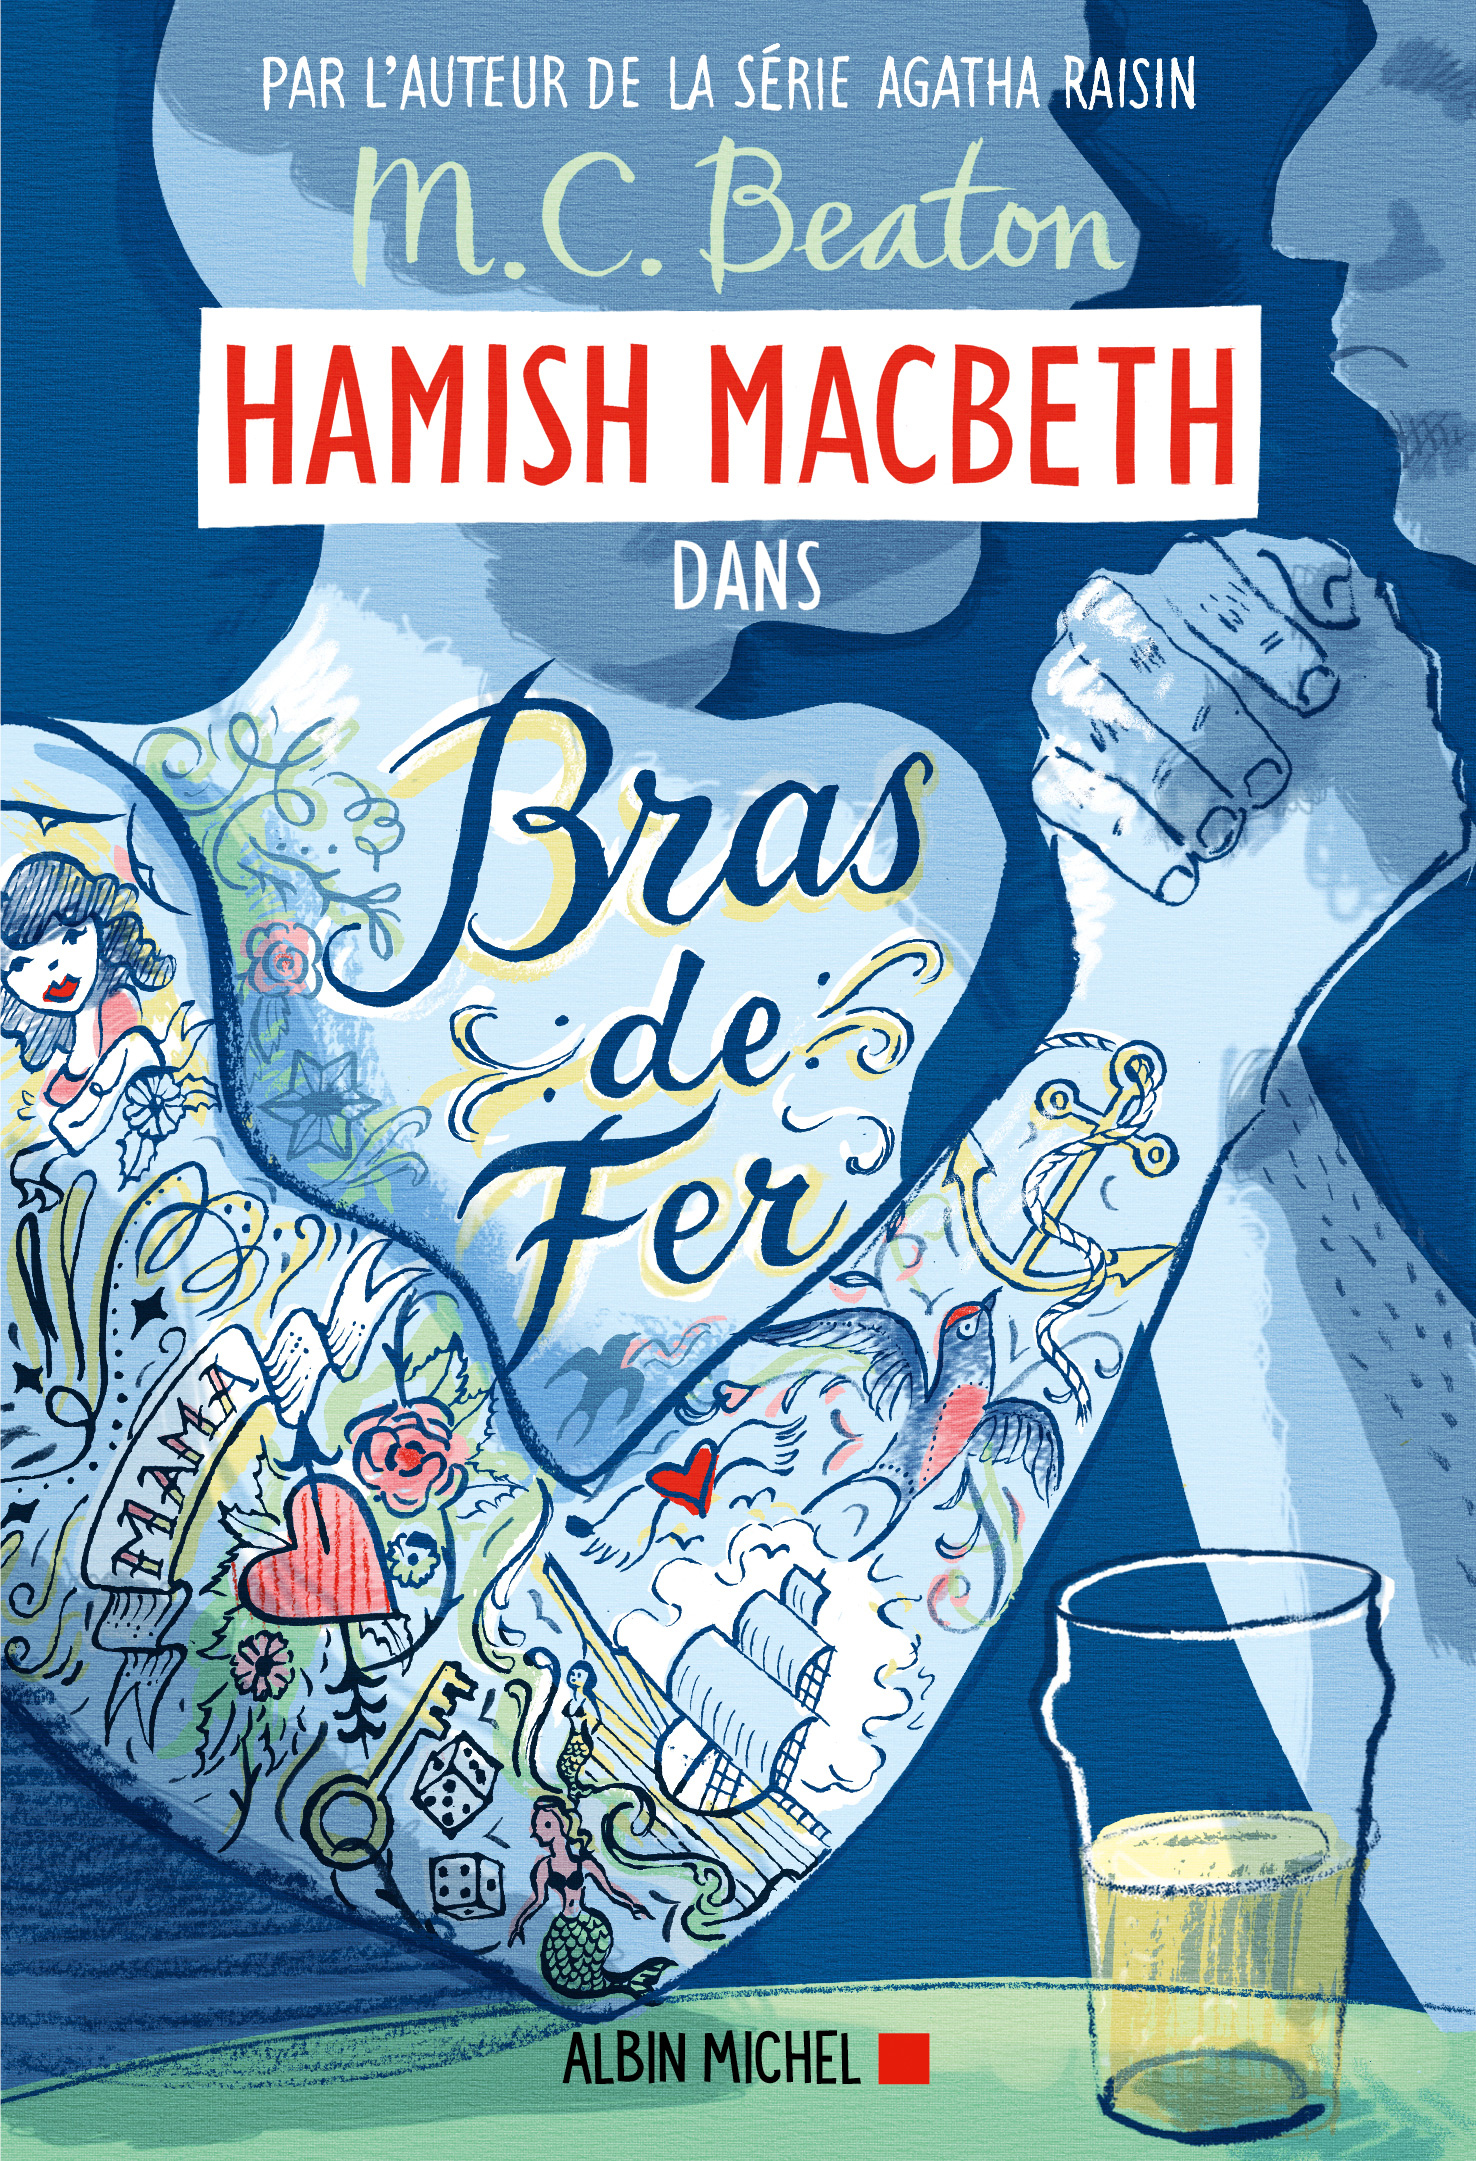 Couverture du livre Hamish Macbeth 12 - Bras de fer